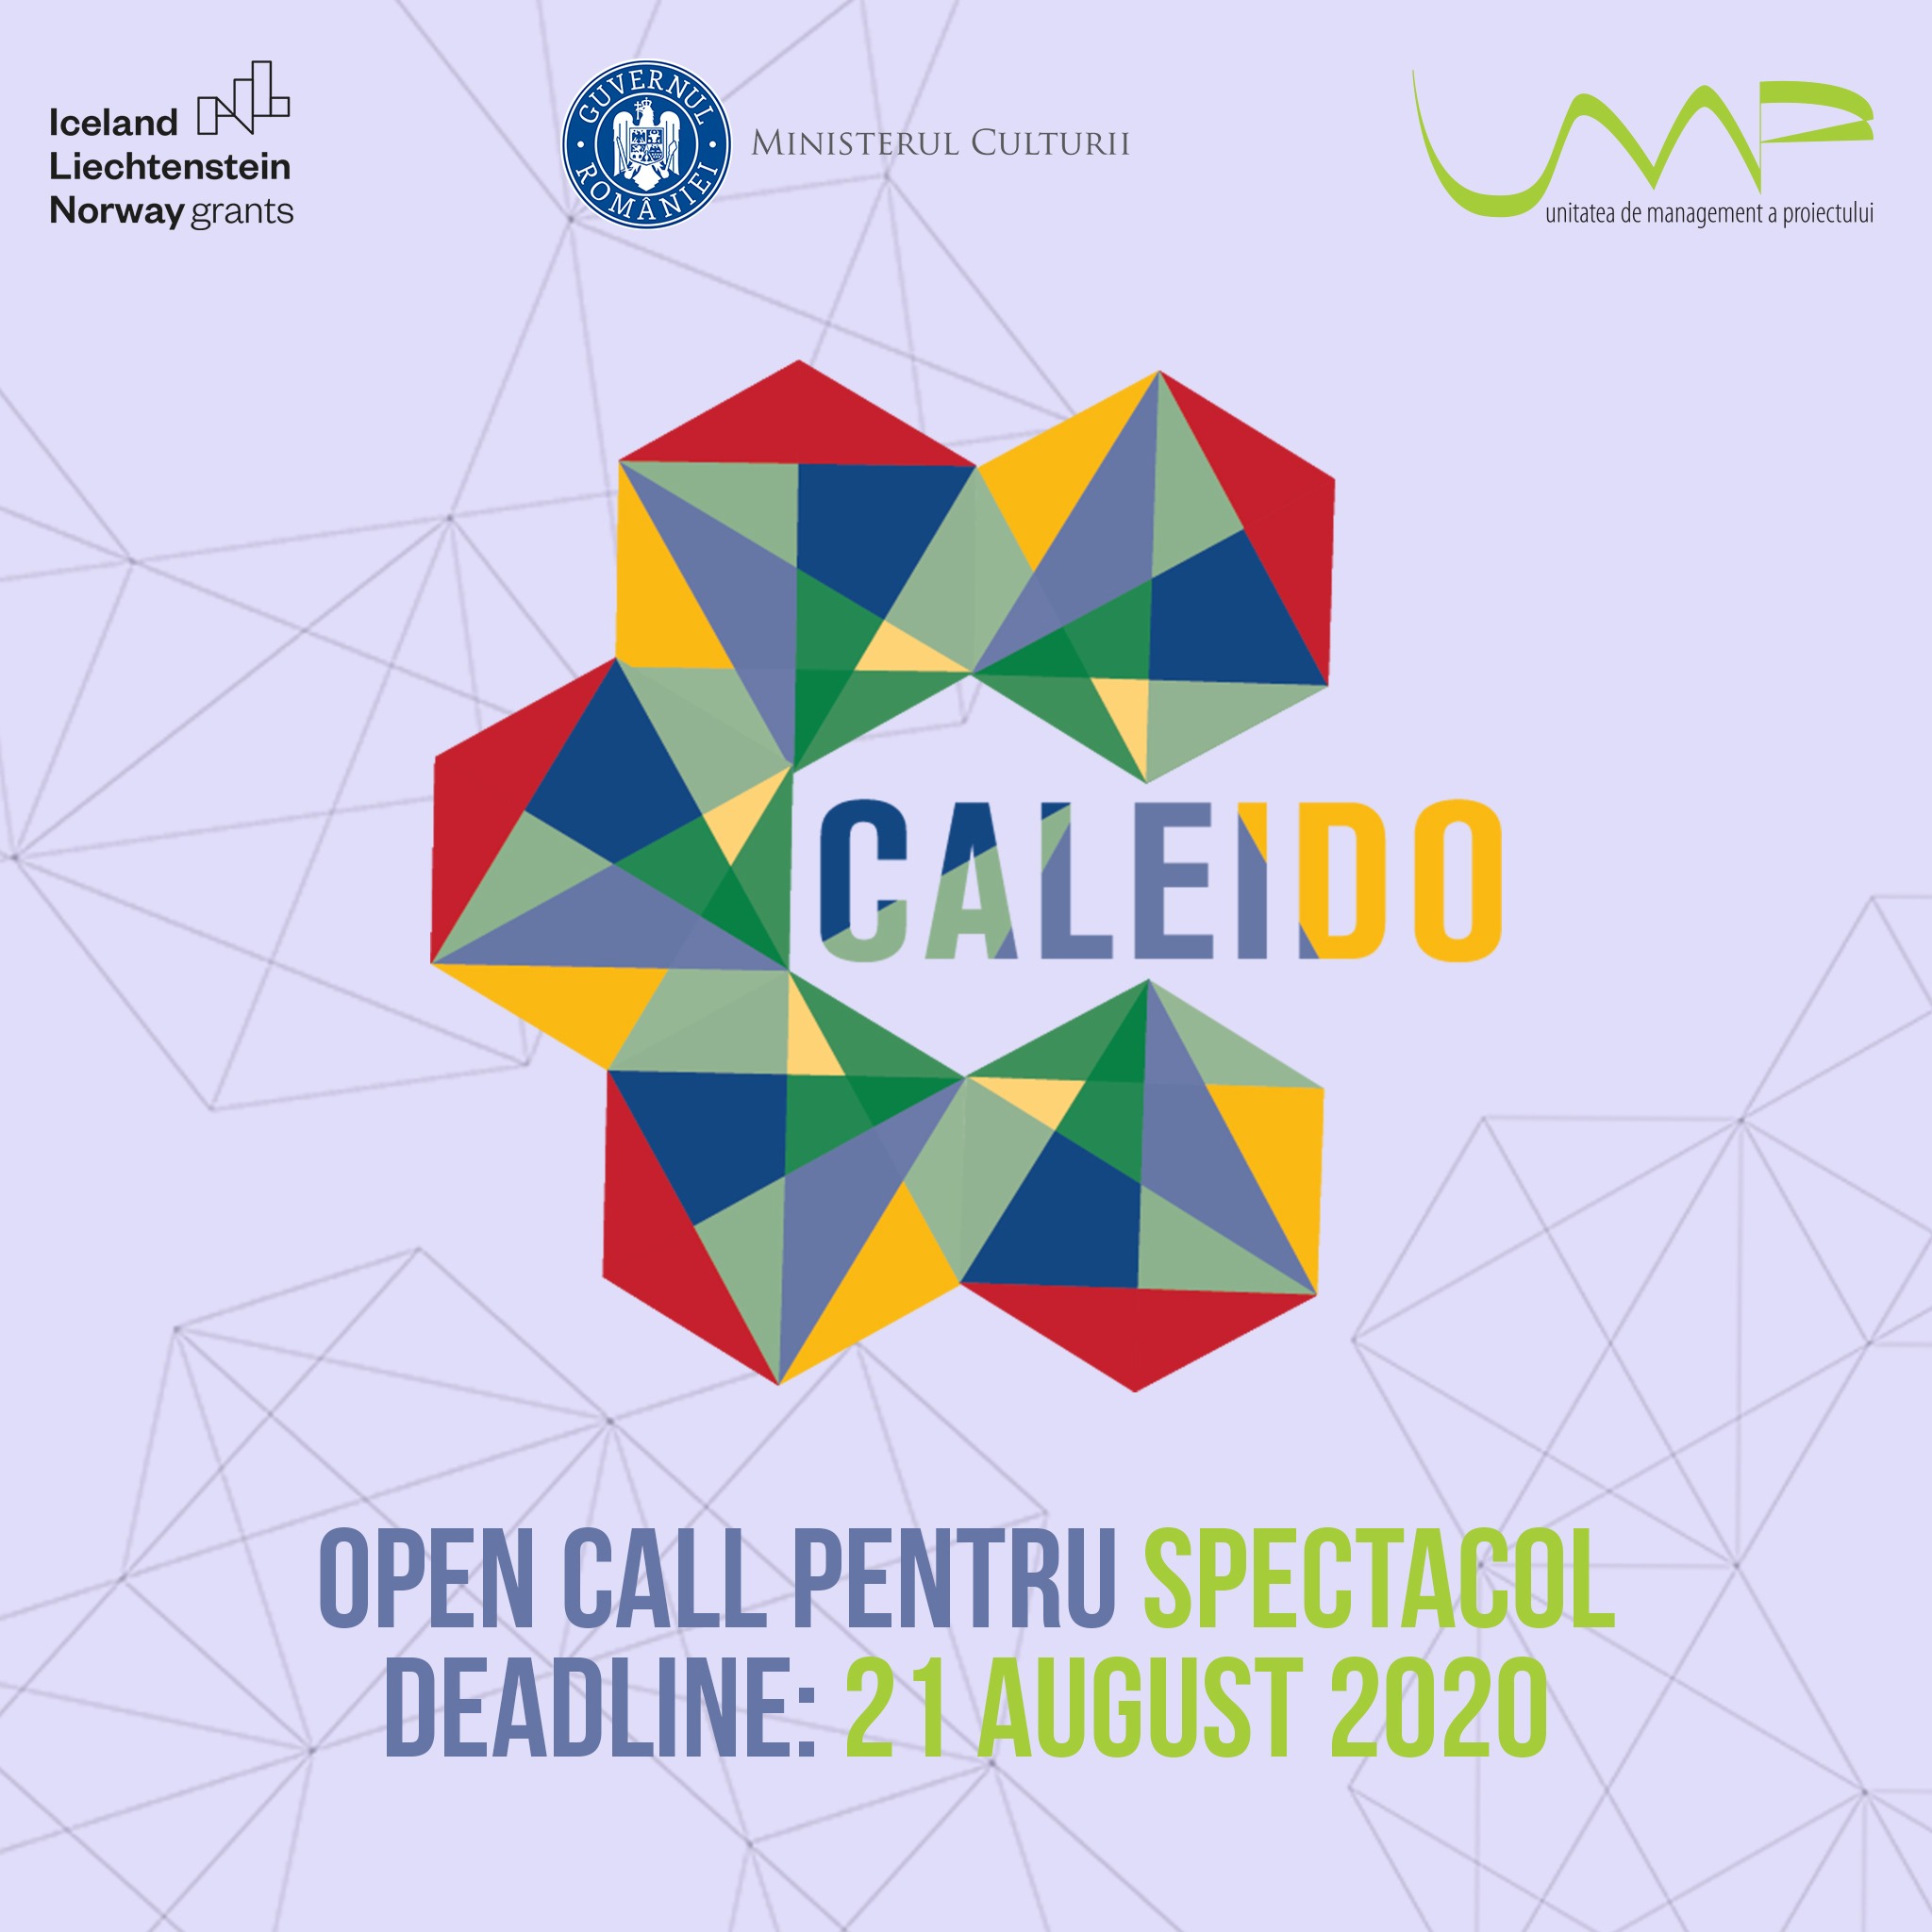 Open Call pentru spectacol invitat în Festivalul Caleido